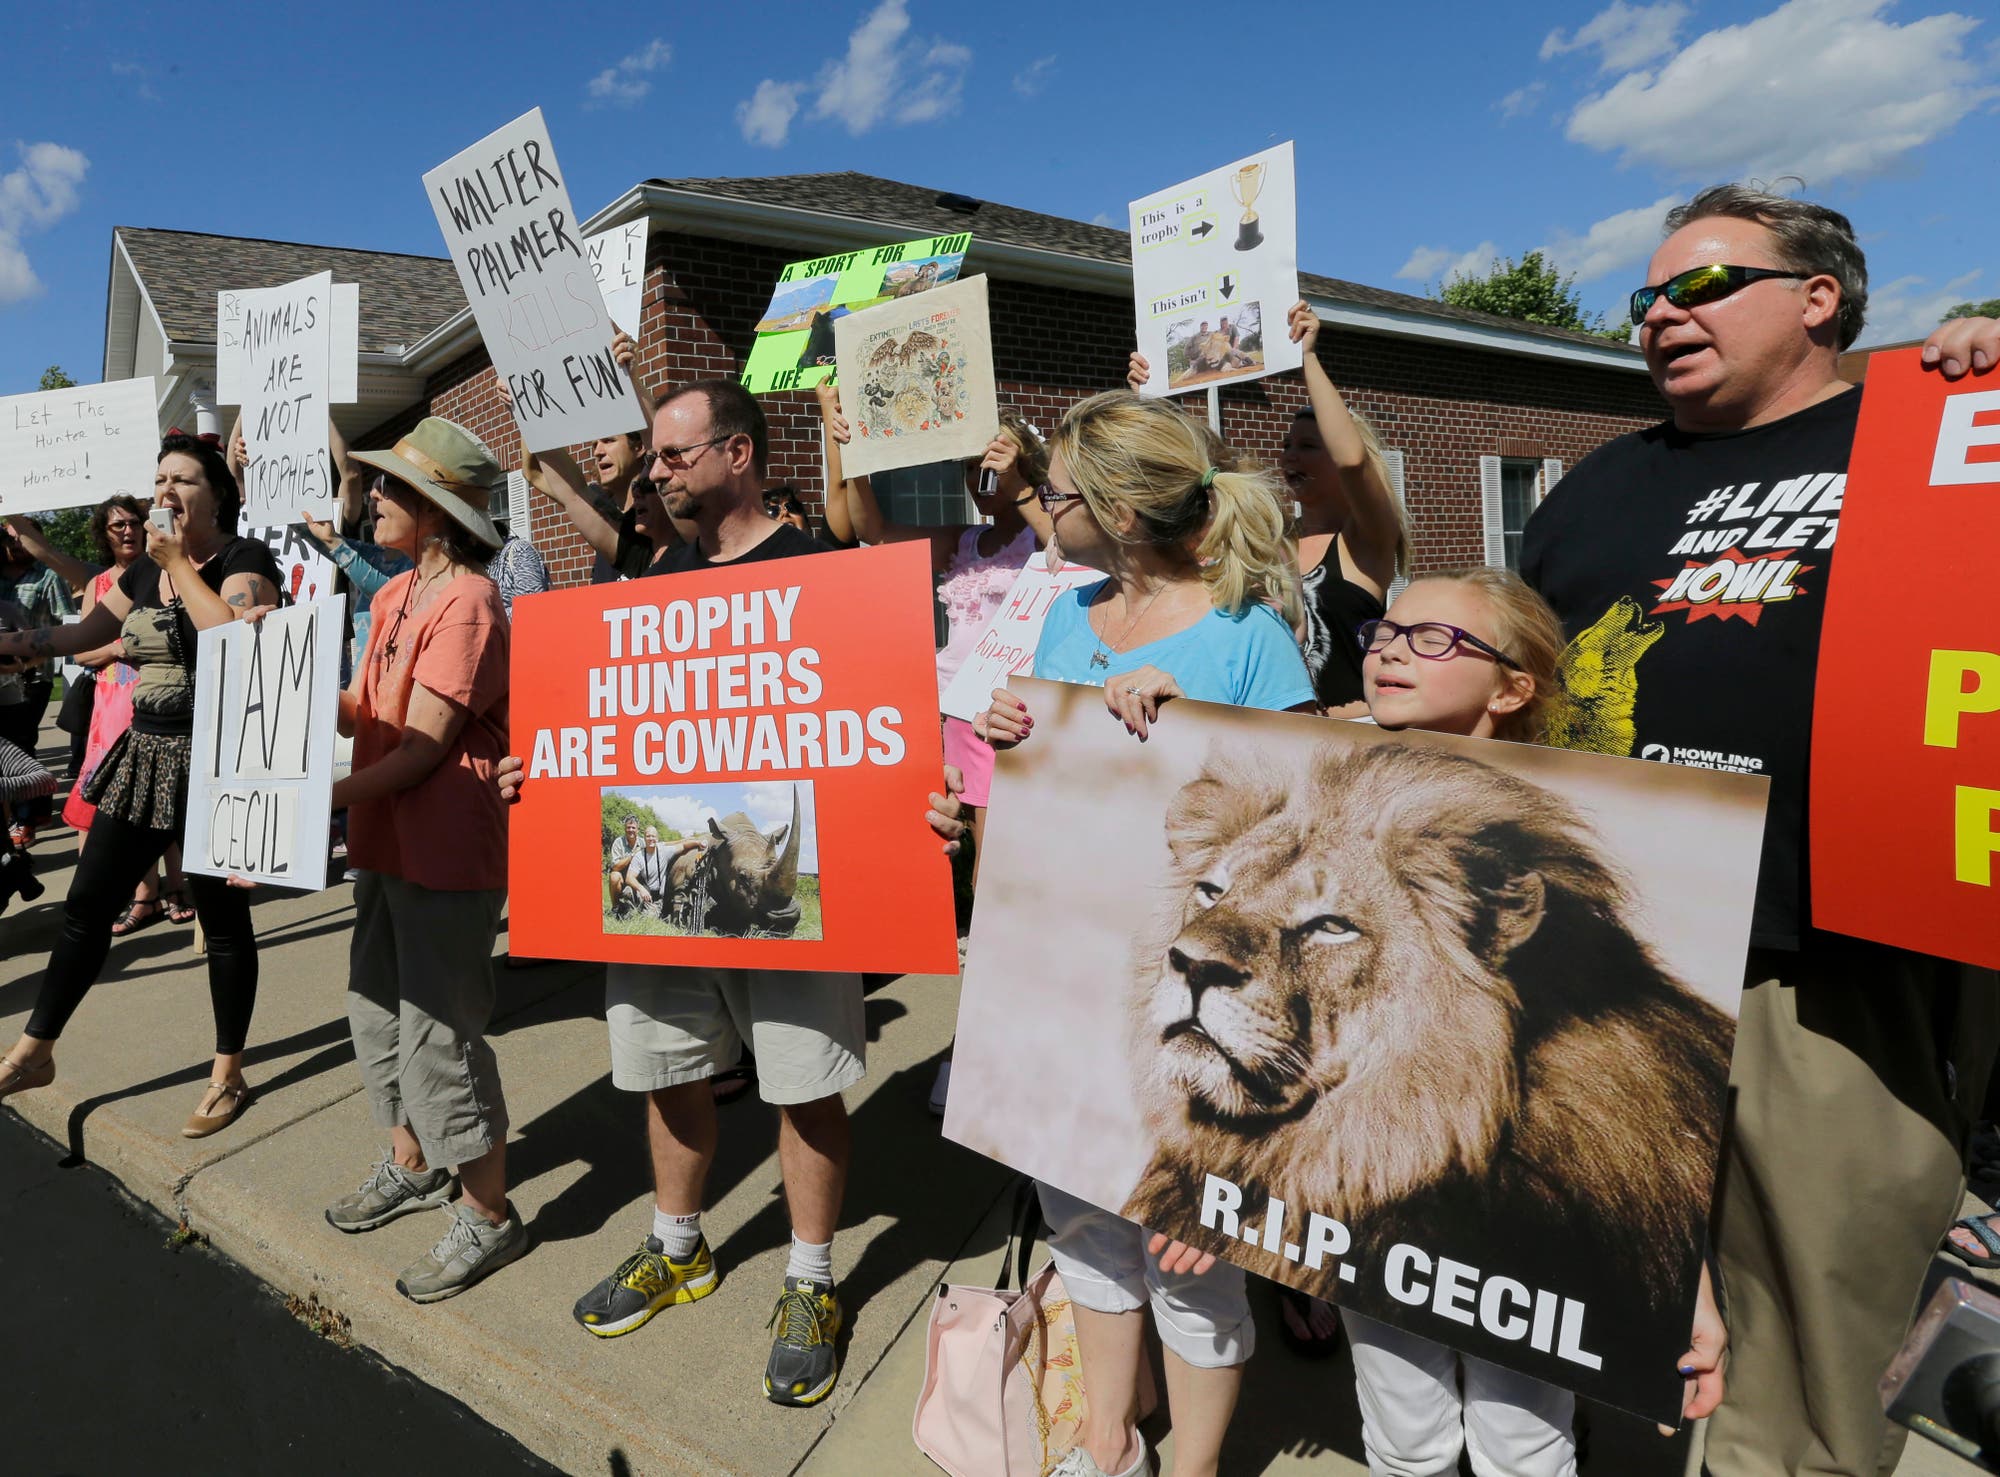 Der Abschuss von Cecil löste weltweit Abscheu und Proteste hervor. Getötet wurde der Löwe anscheinend illegal durch einen US-amerikanischen Zahnarzt.